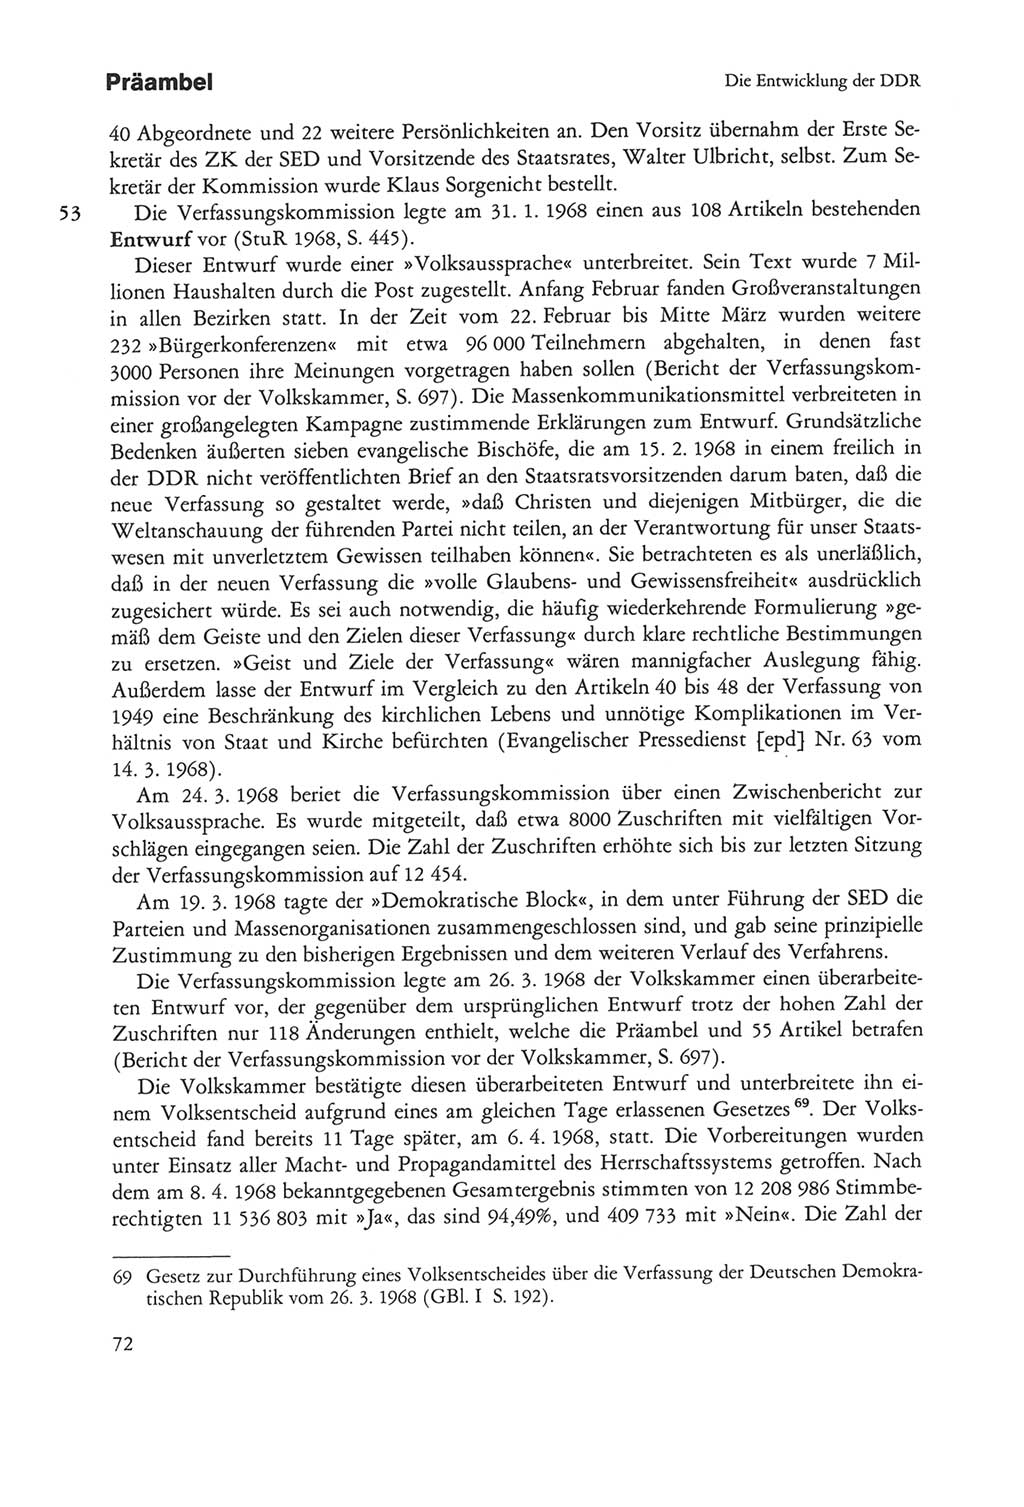 Die sozialistische Verfassung der Deutschen Demokratischen Republik (DDR), Kommentar mit einem Nachtrag 1997, Seite 72 (Soz. Verf. DDR Komm. Nachtr. 1997, S. 72)